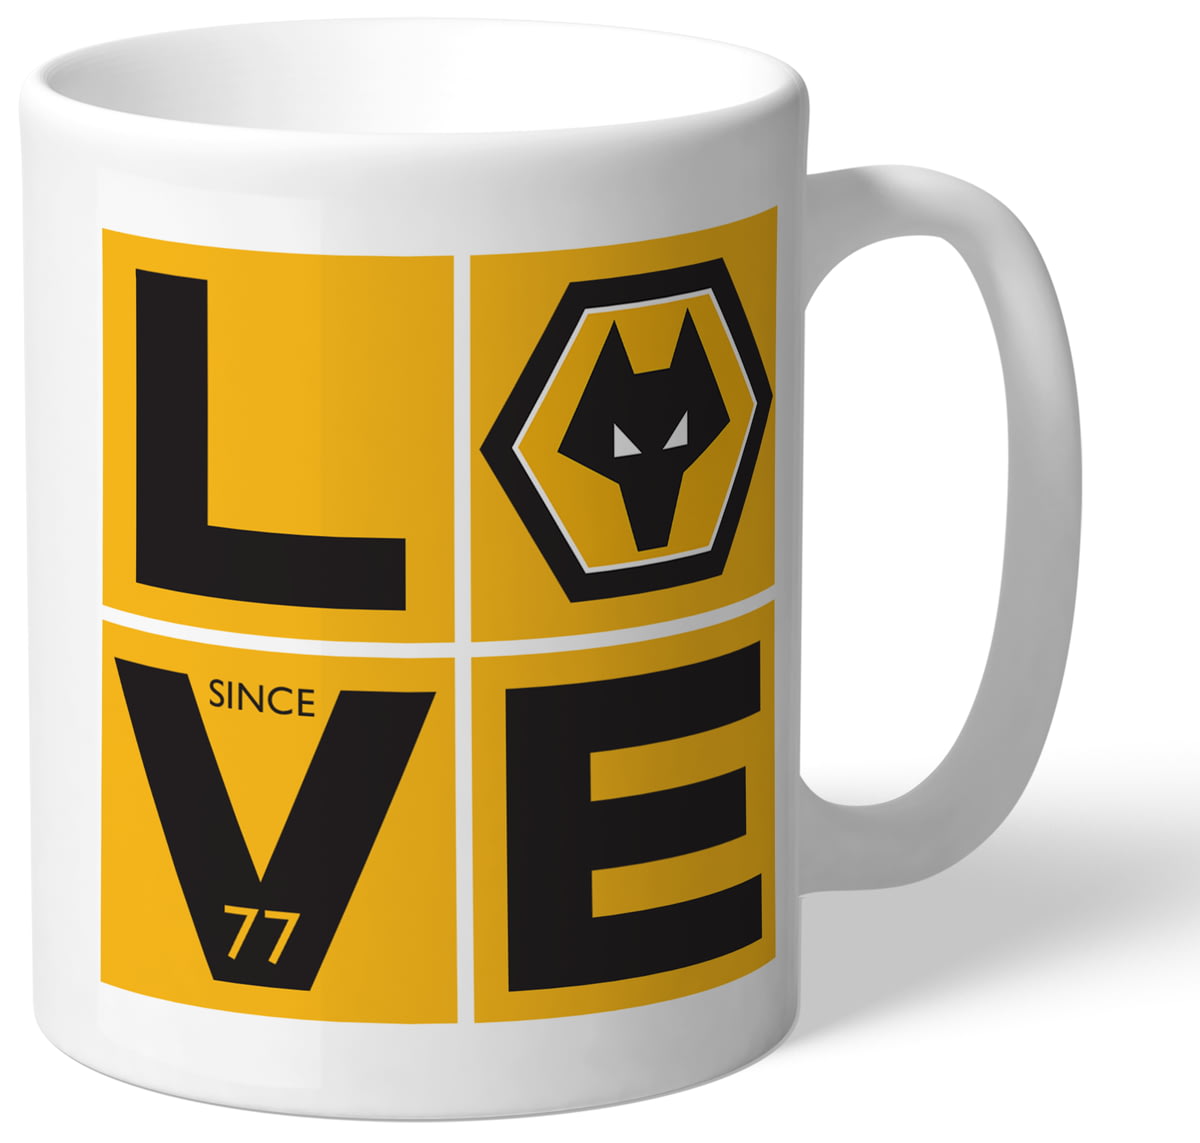 Personalised Ceramic Mug LOVE Wolverhampton Wanderers F.C